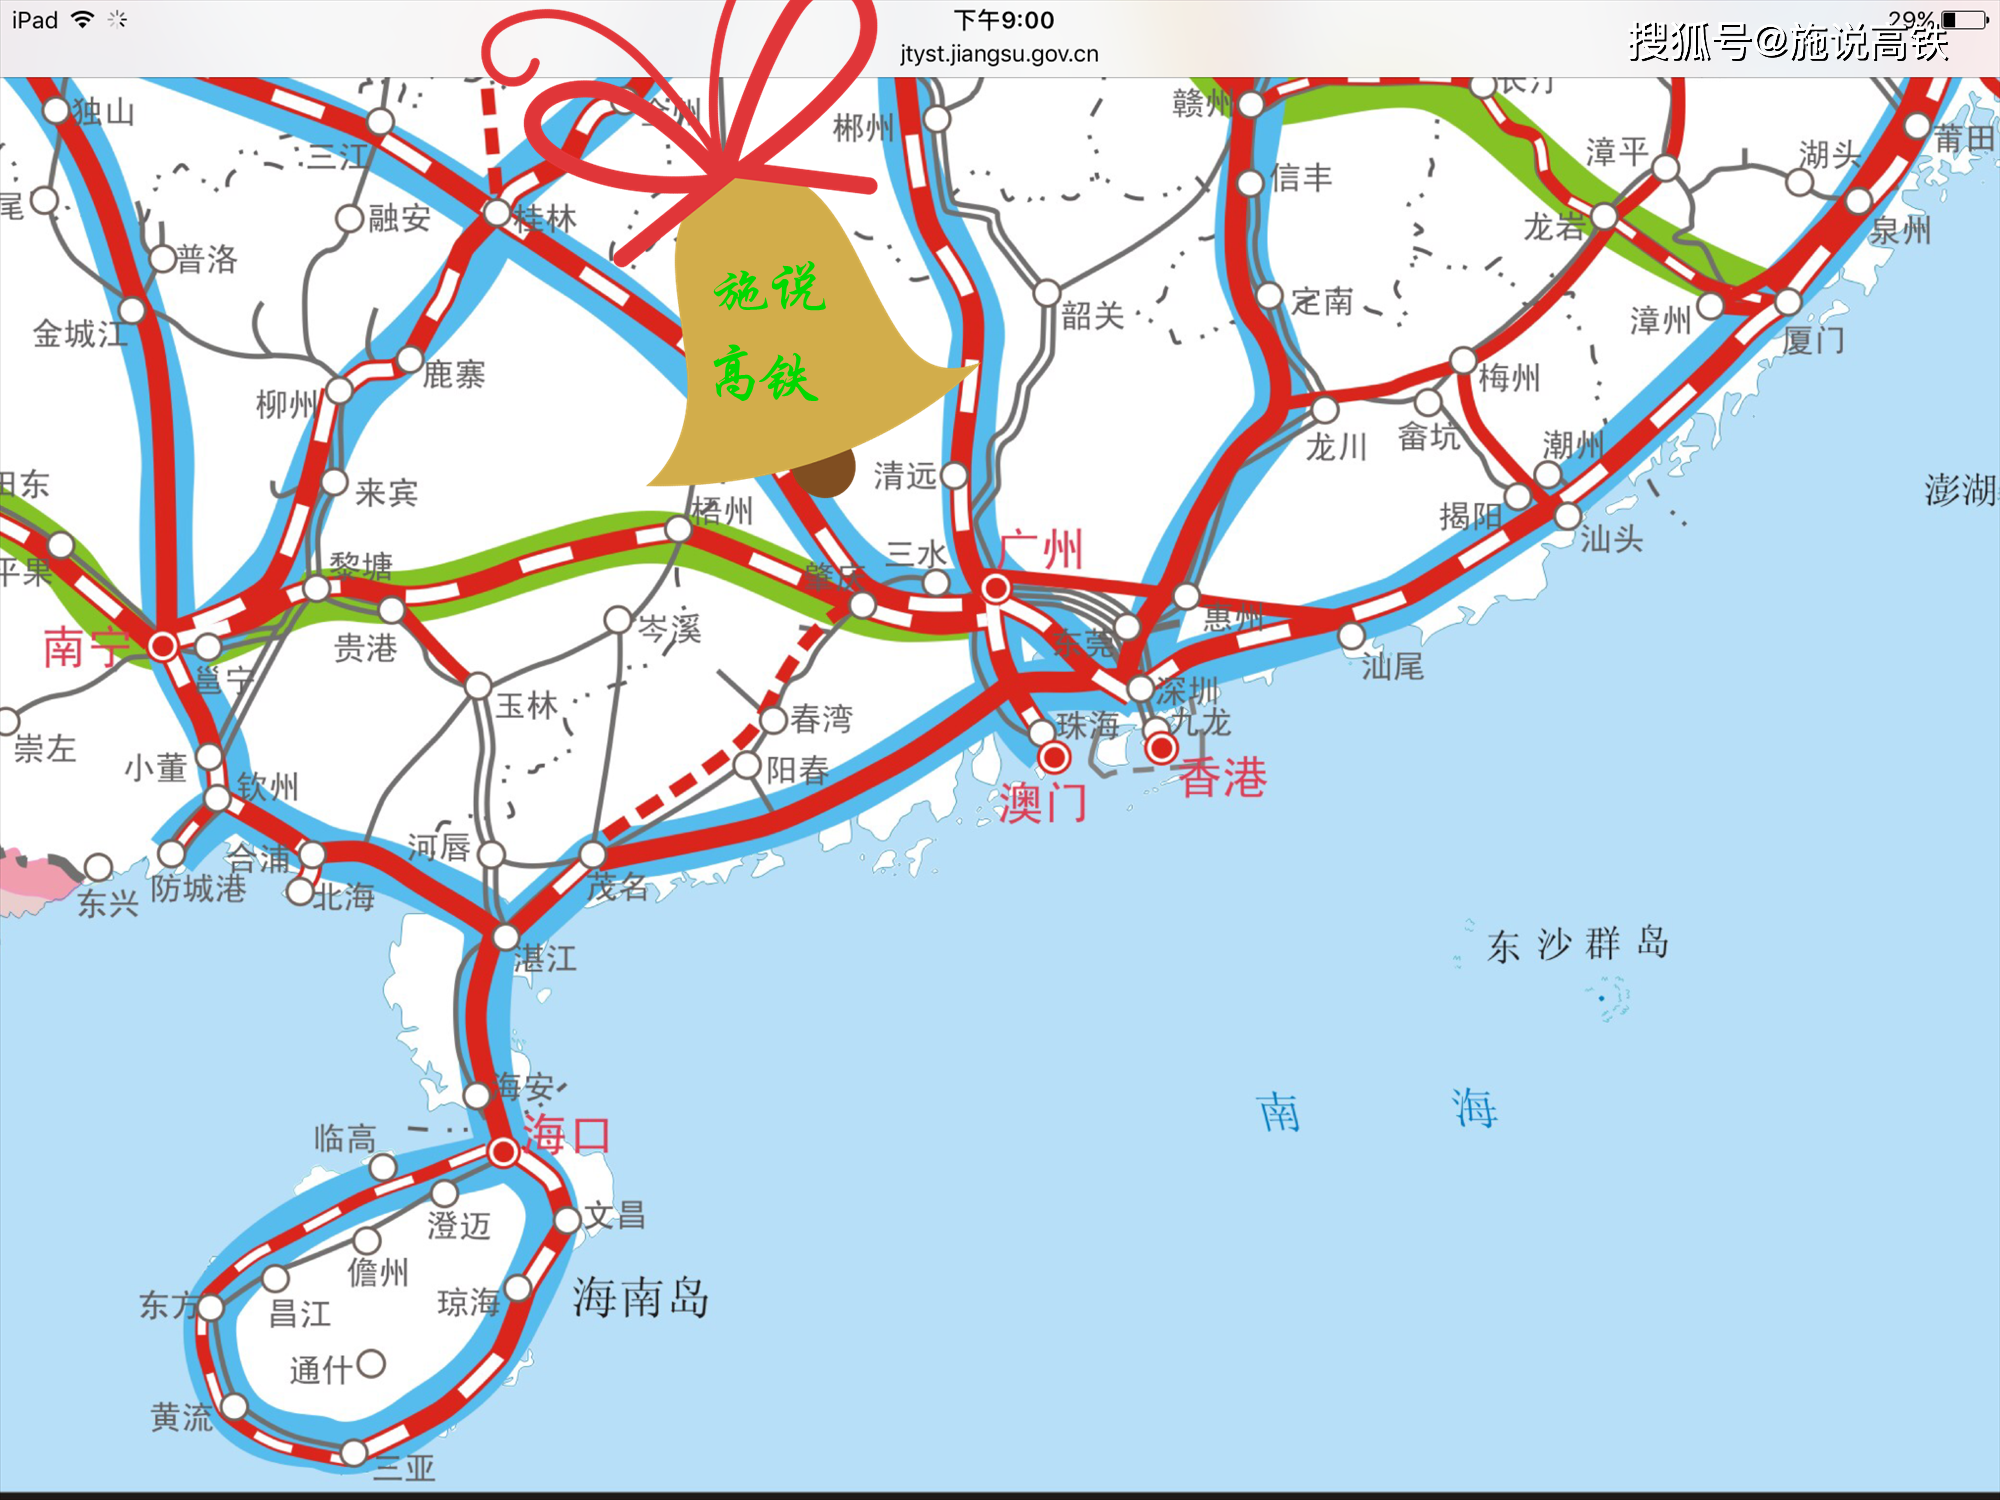 广东铁路货运线路图图片